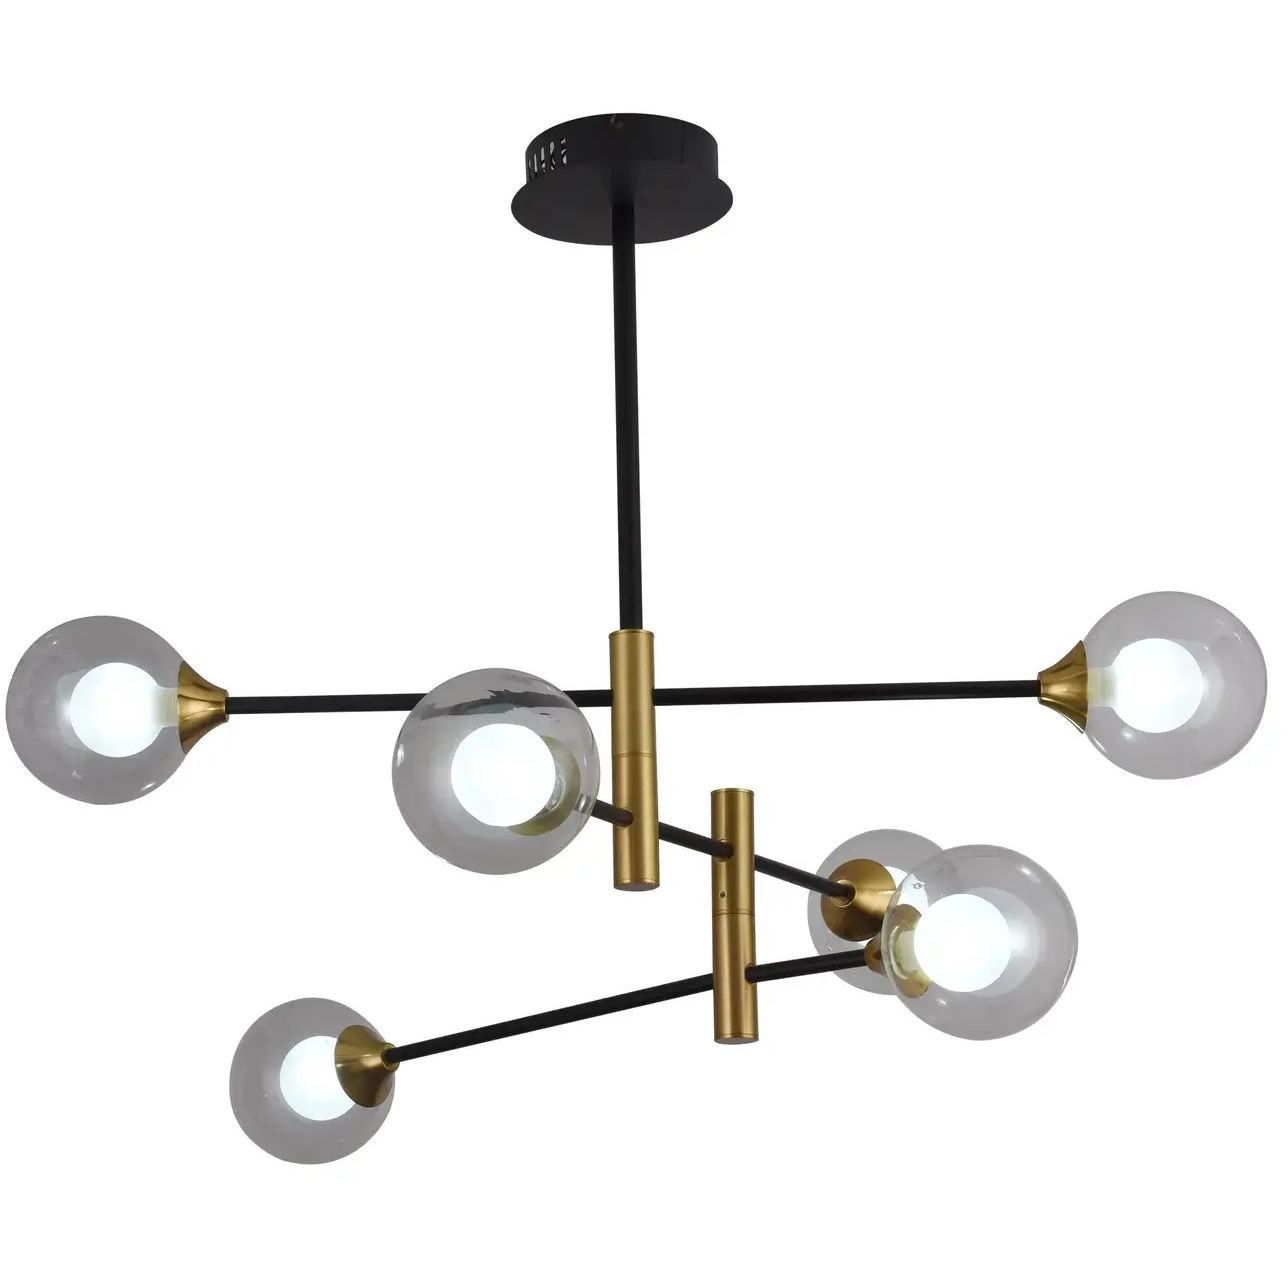 Светильник потолочный Miorro LED Prato G9 с пультом ДУ 840х560 мм золото/черный (51-313-006) - фото 3